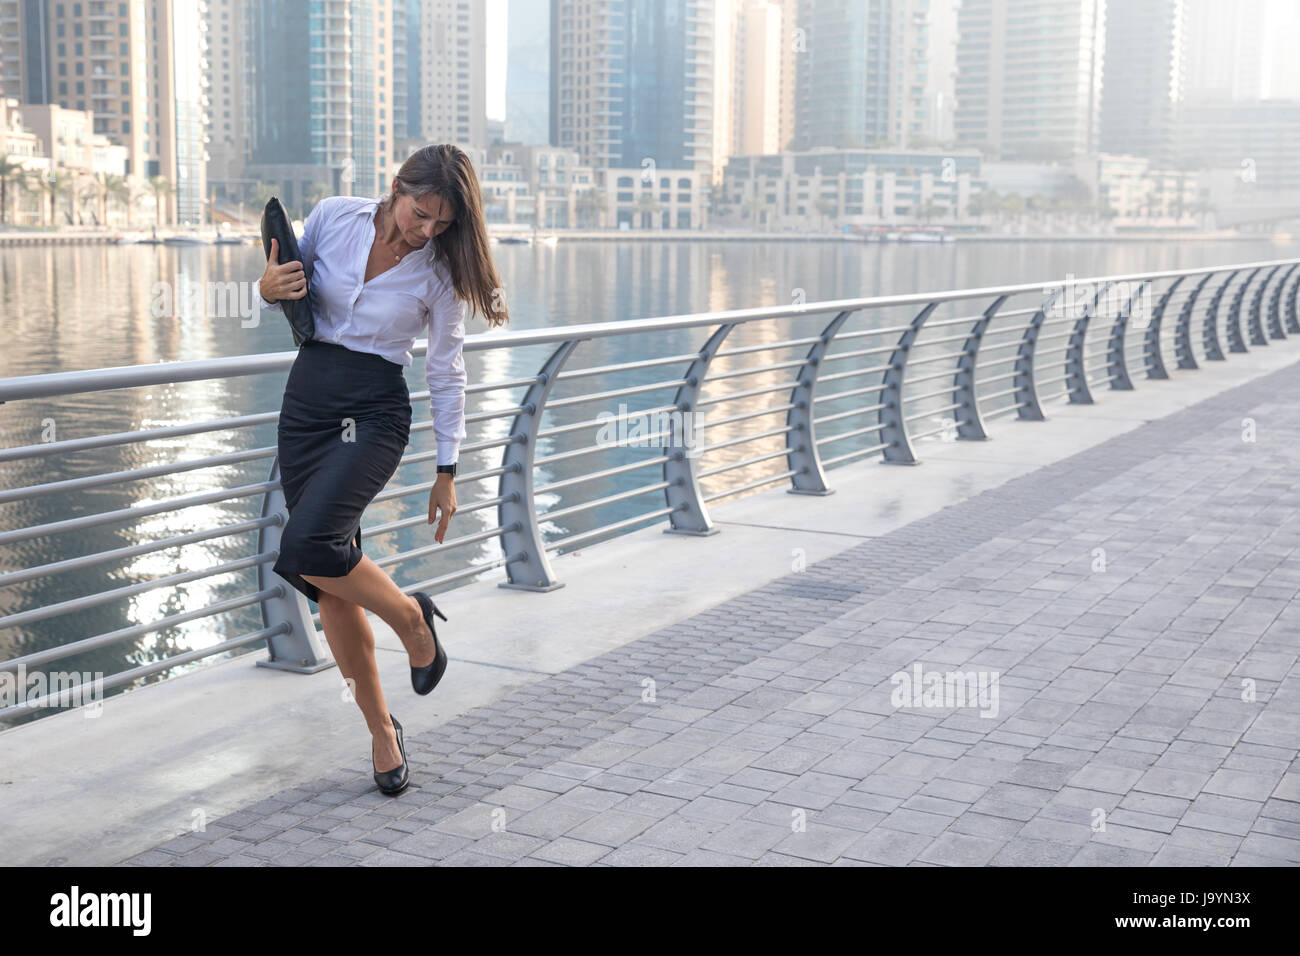 Professionelle Business-Frau überprüfen ihre high Heels auf einem Holzsteg  Stockfotografie - Alamy